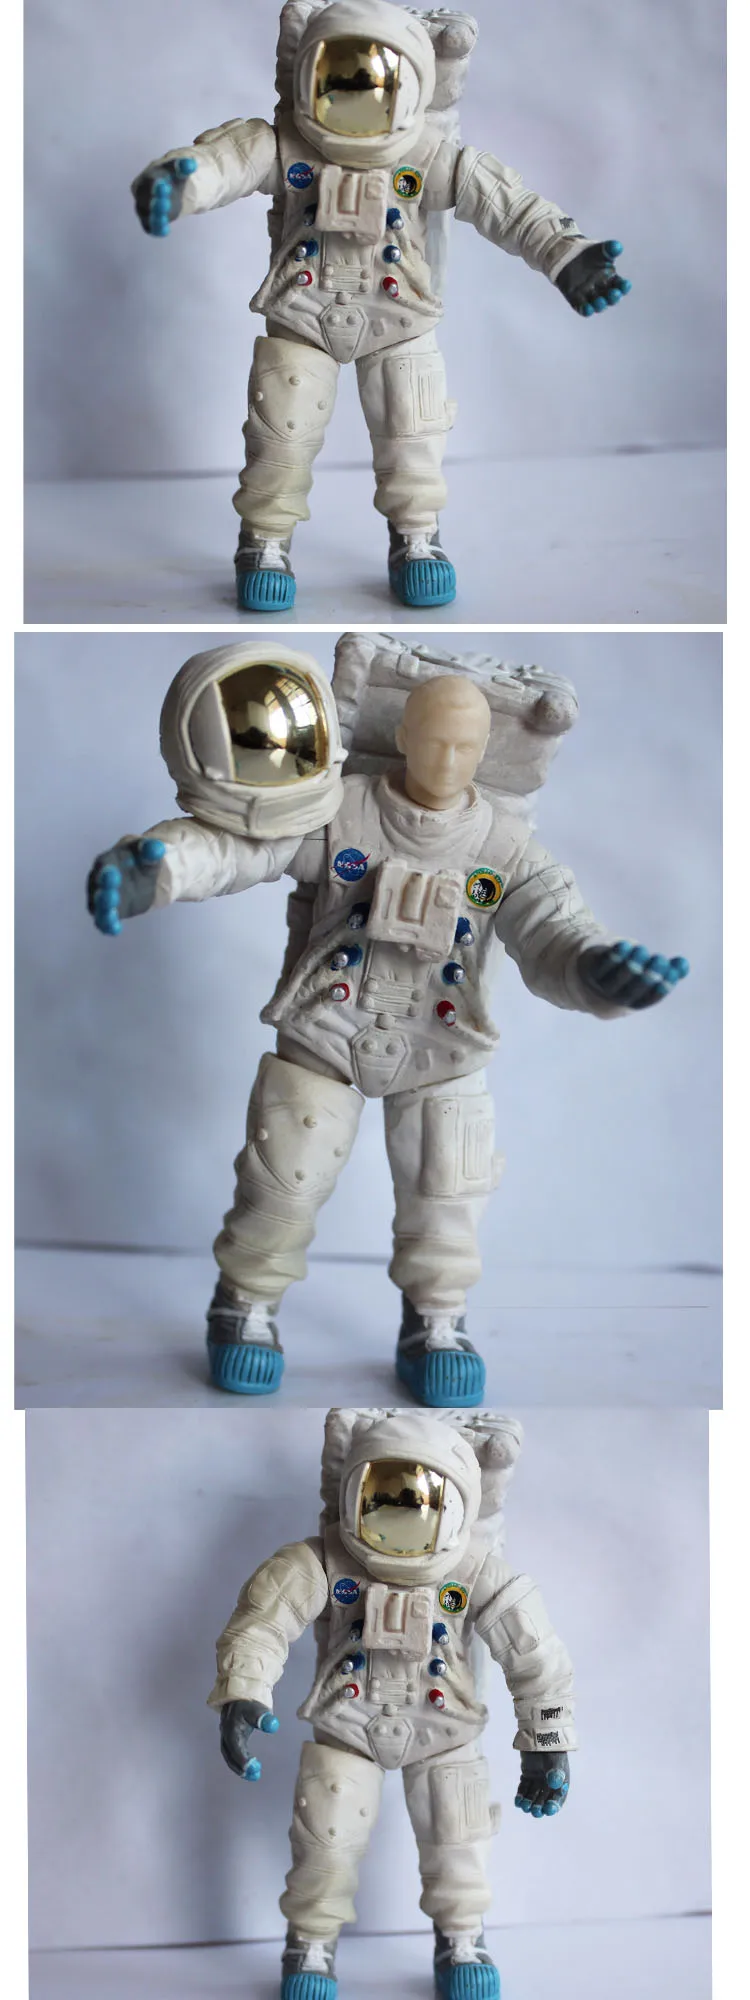 Модель лунного космонавта, солдат, фигурка, фигурки астронавтов, украшение для автомобиля, Diy куклы, космонавт, космонавт, кукла, Космический человек, подарок